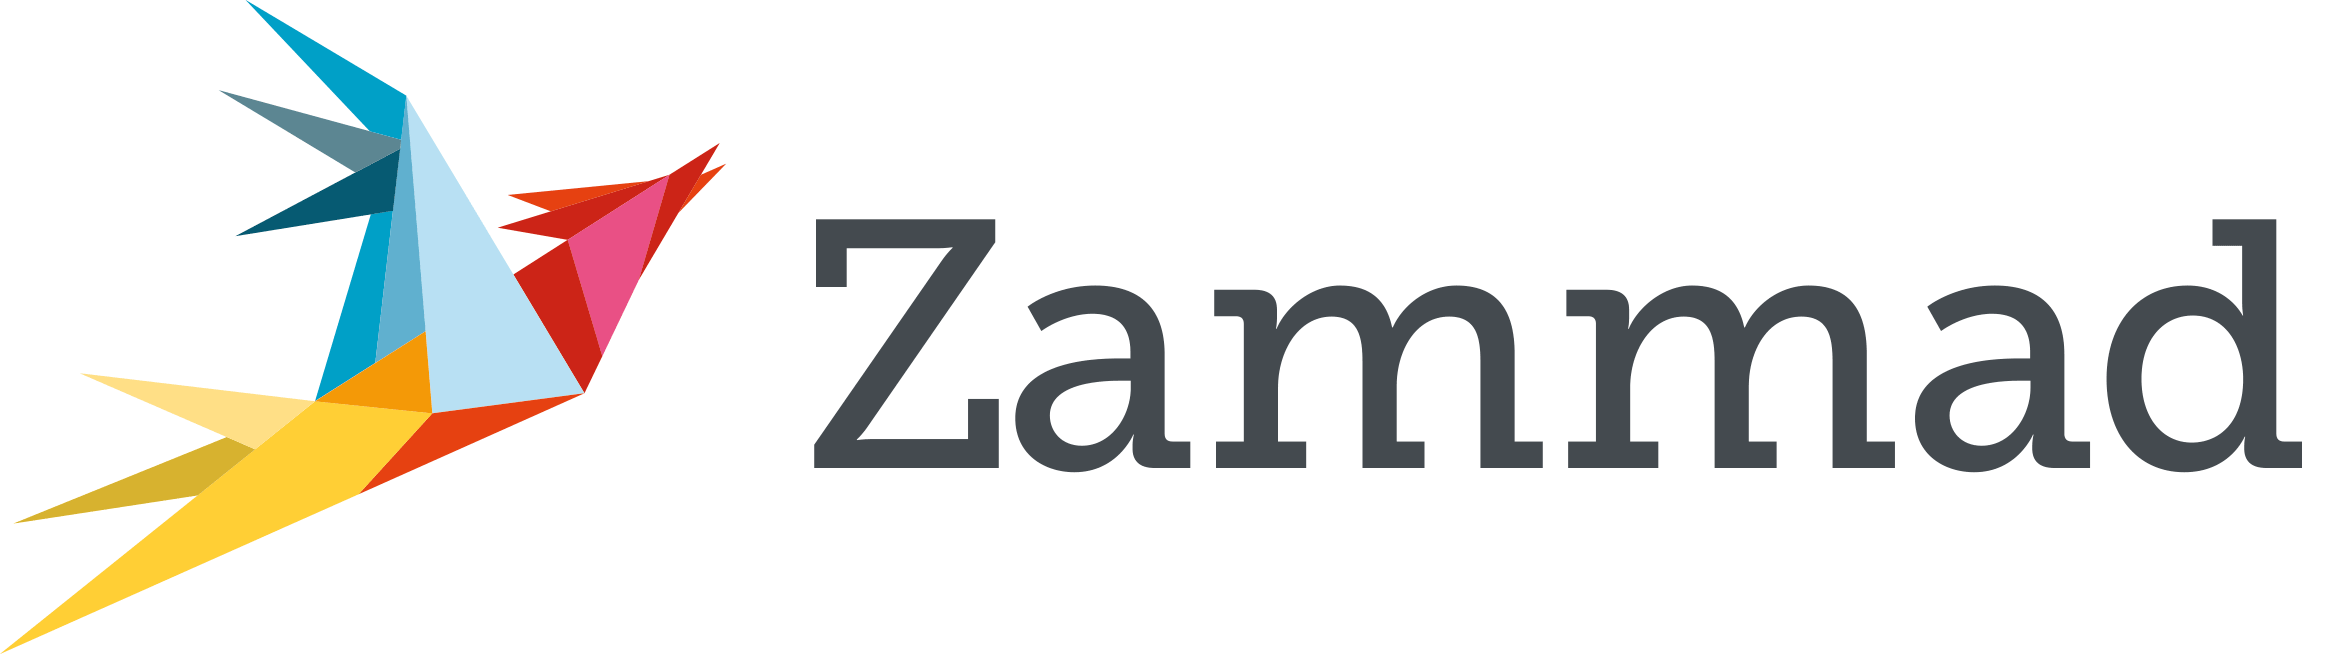 Logo de Zammad. Un oiseu en origami de plusieurs couleurs (jaune, bleu, rouge, orange, rose), et Zammad écrit en noir à côté.